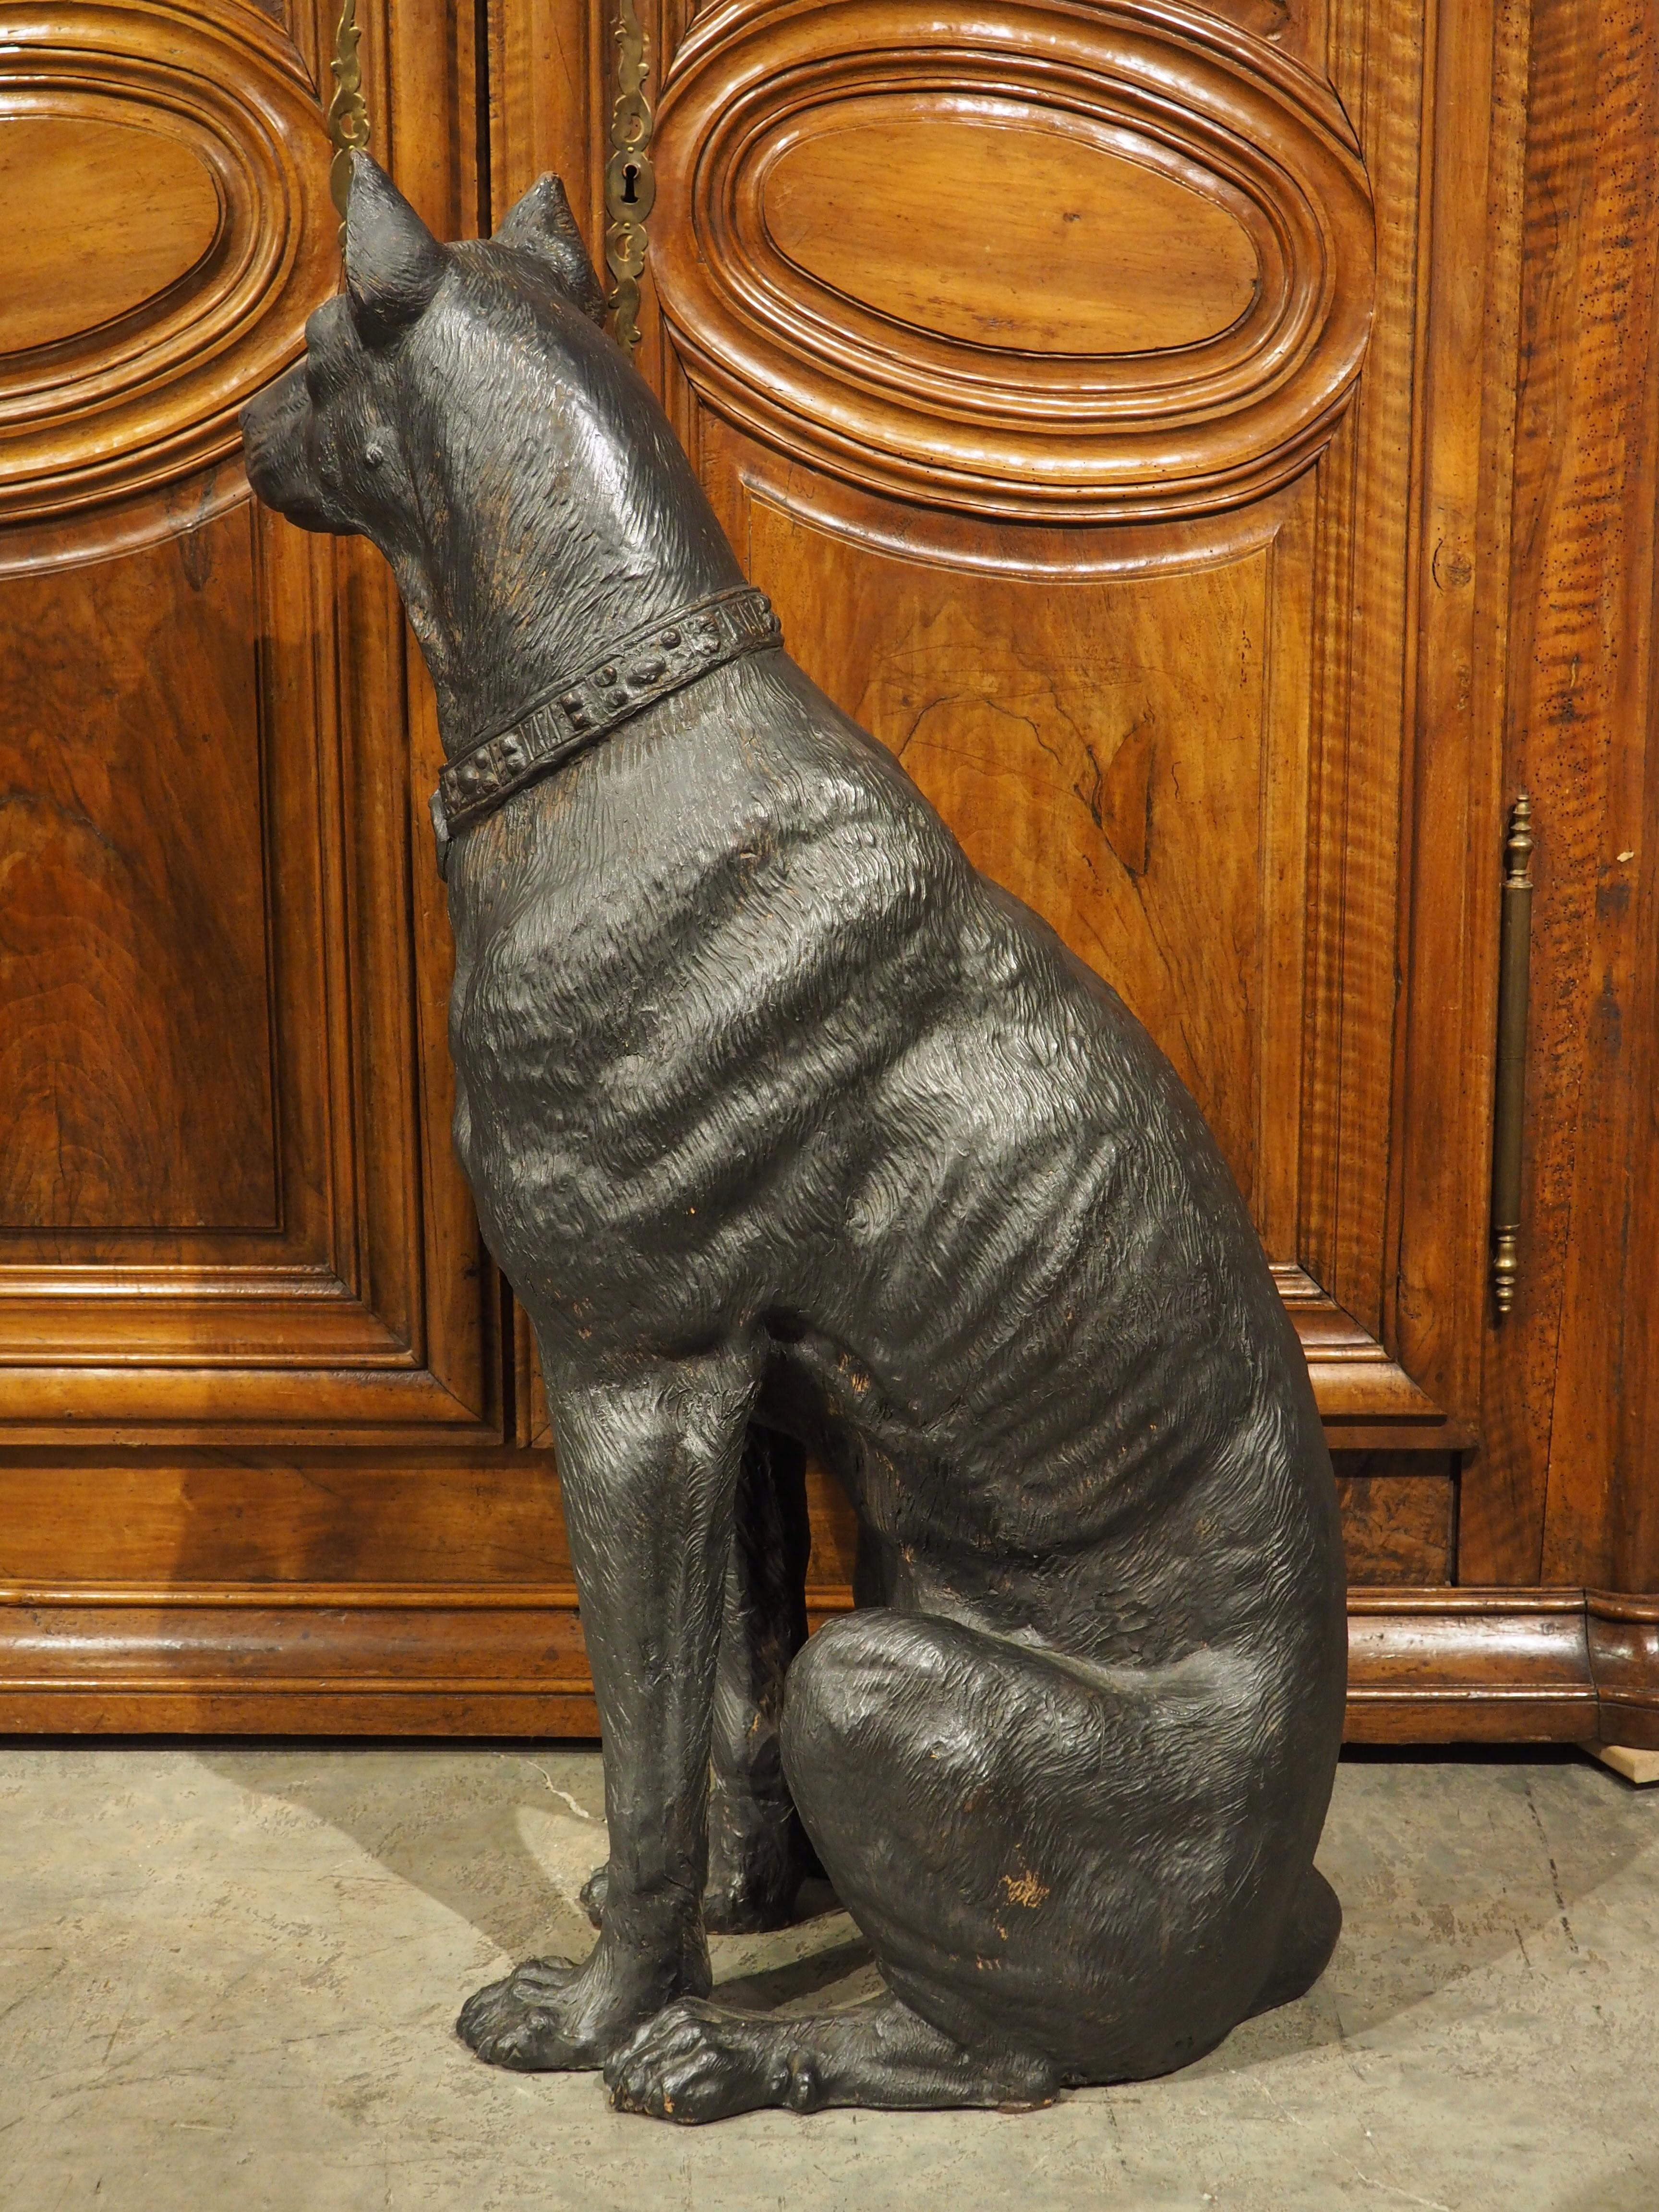 Originaire d'Autriche, vers 1880, cette sculpture grandeur nature en terre cuite peinte représente un grand et royal pinscher. Le chien assis a été peint à la main en noir, avec de légères traces de la couleur orange originale de la terre cuite. Un